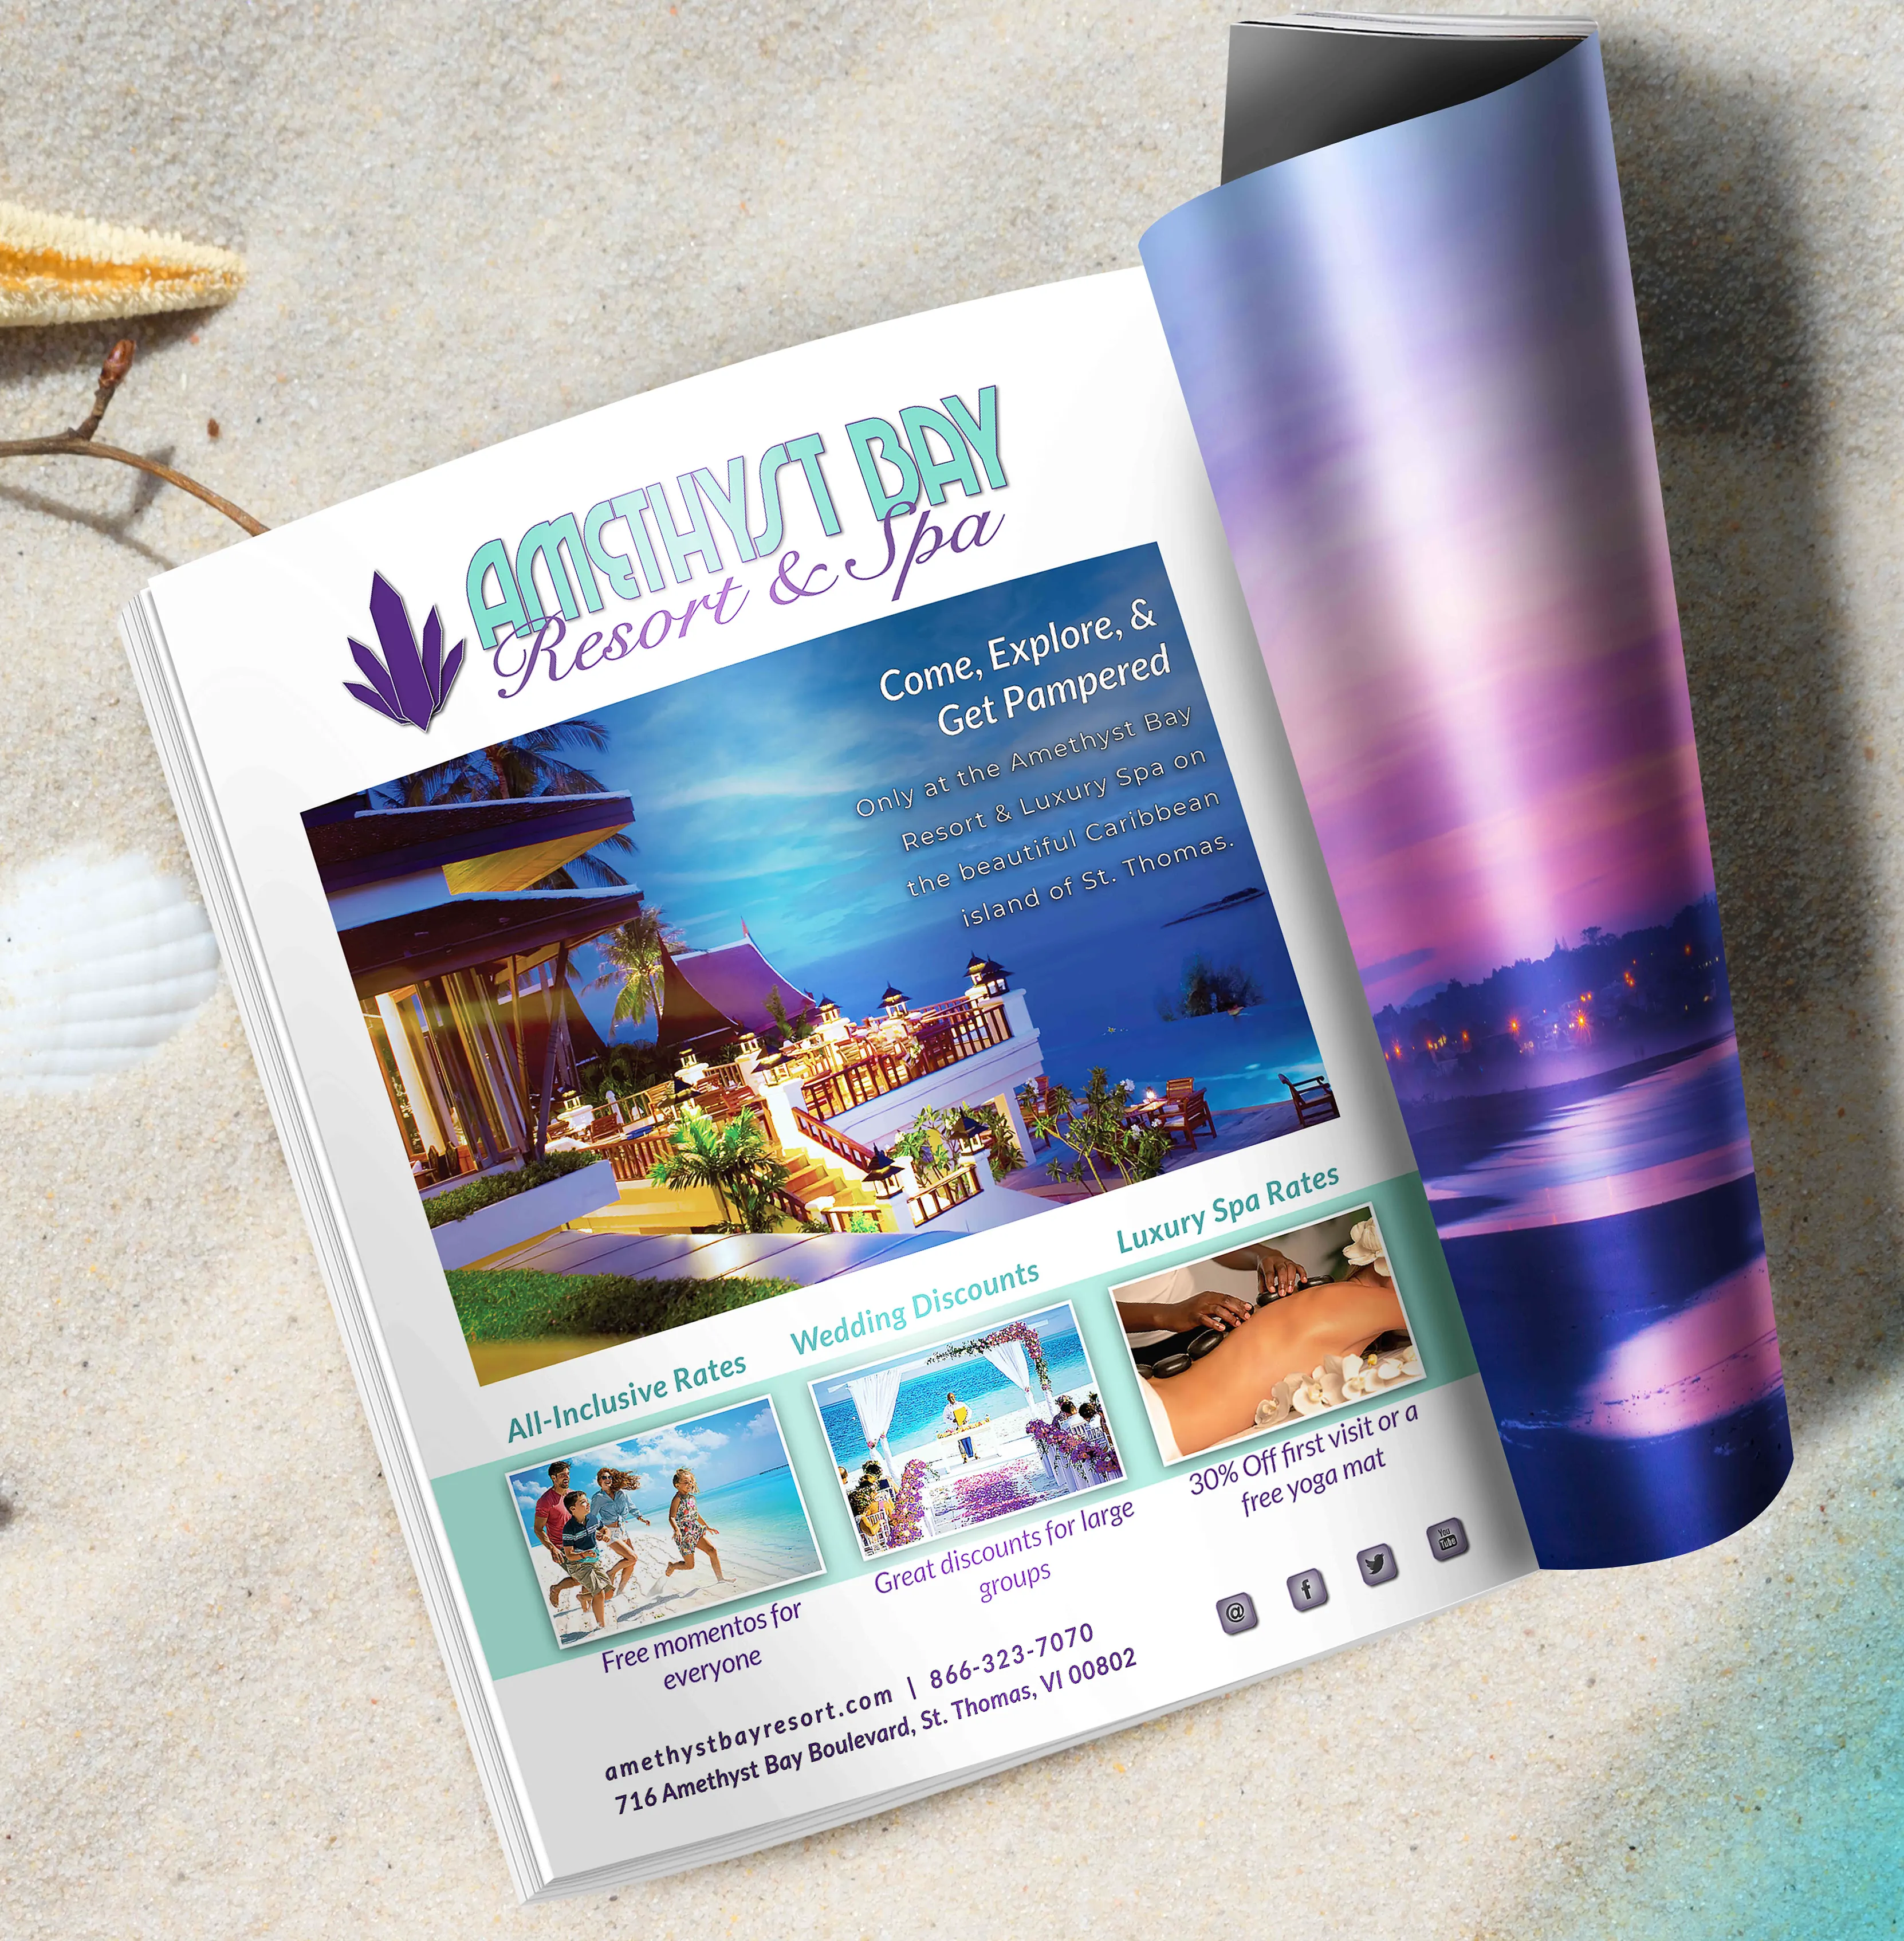 Amethyst Bay Resort Ad